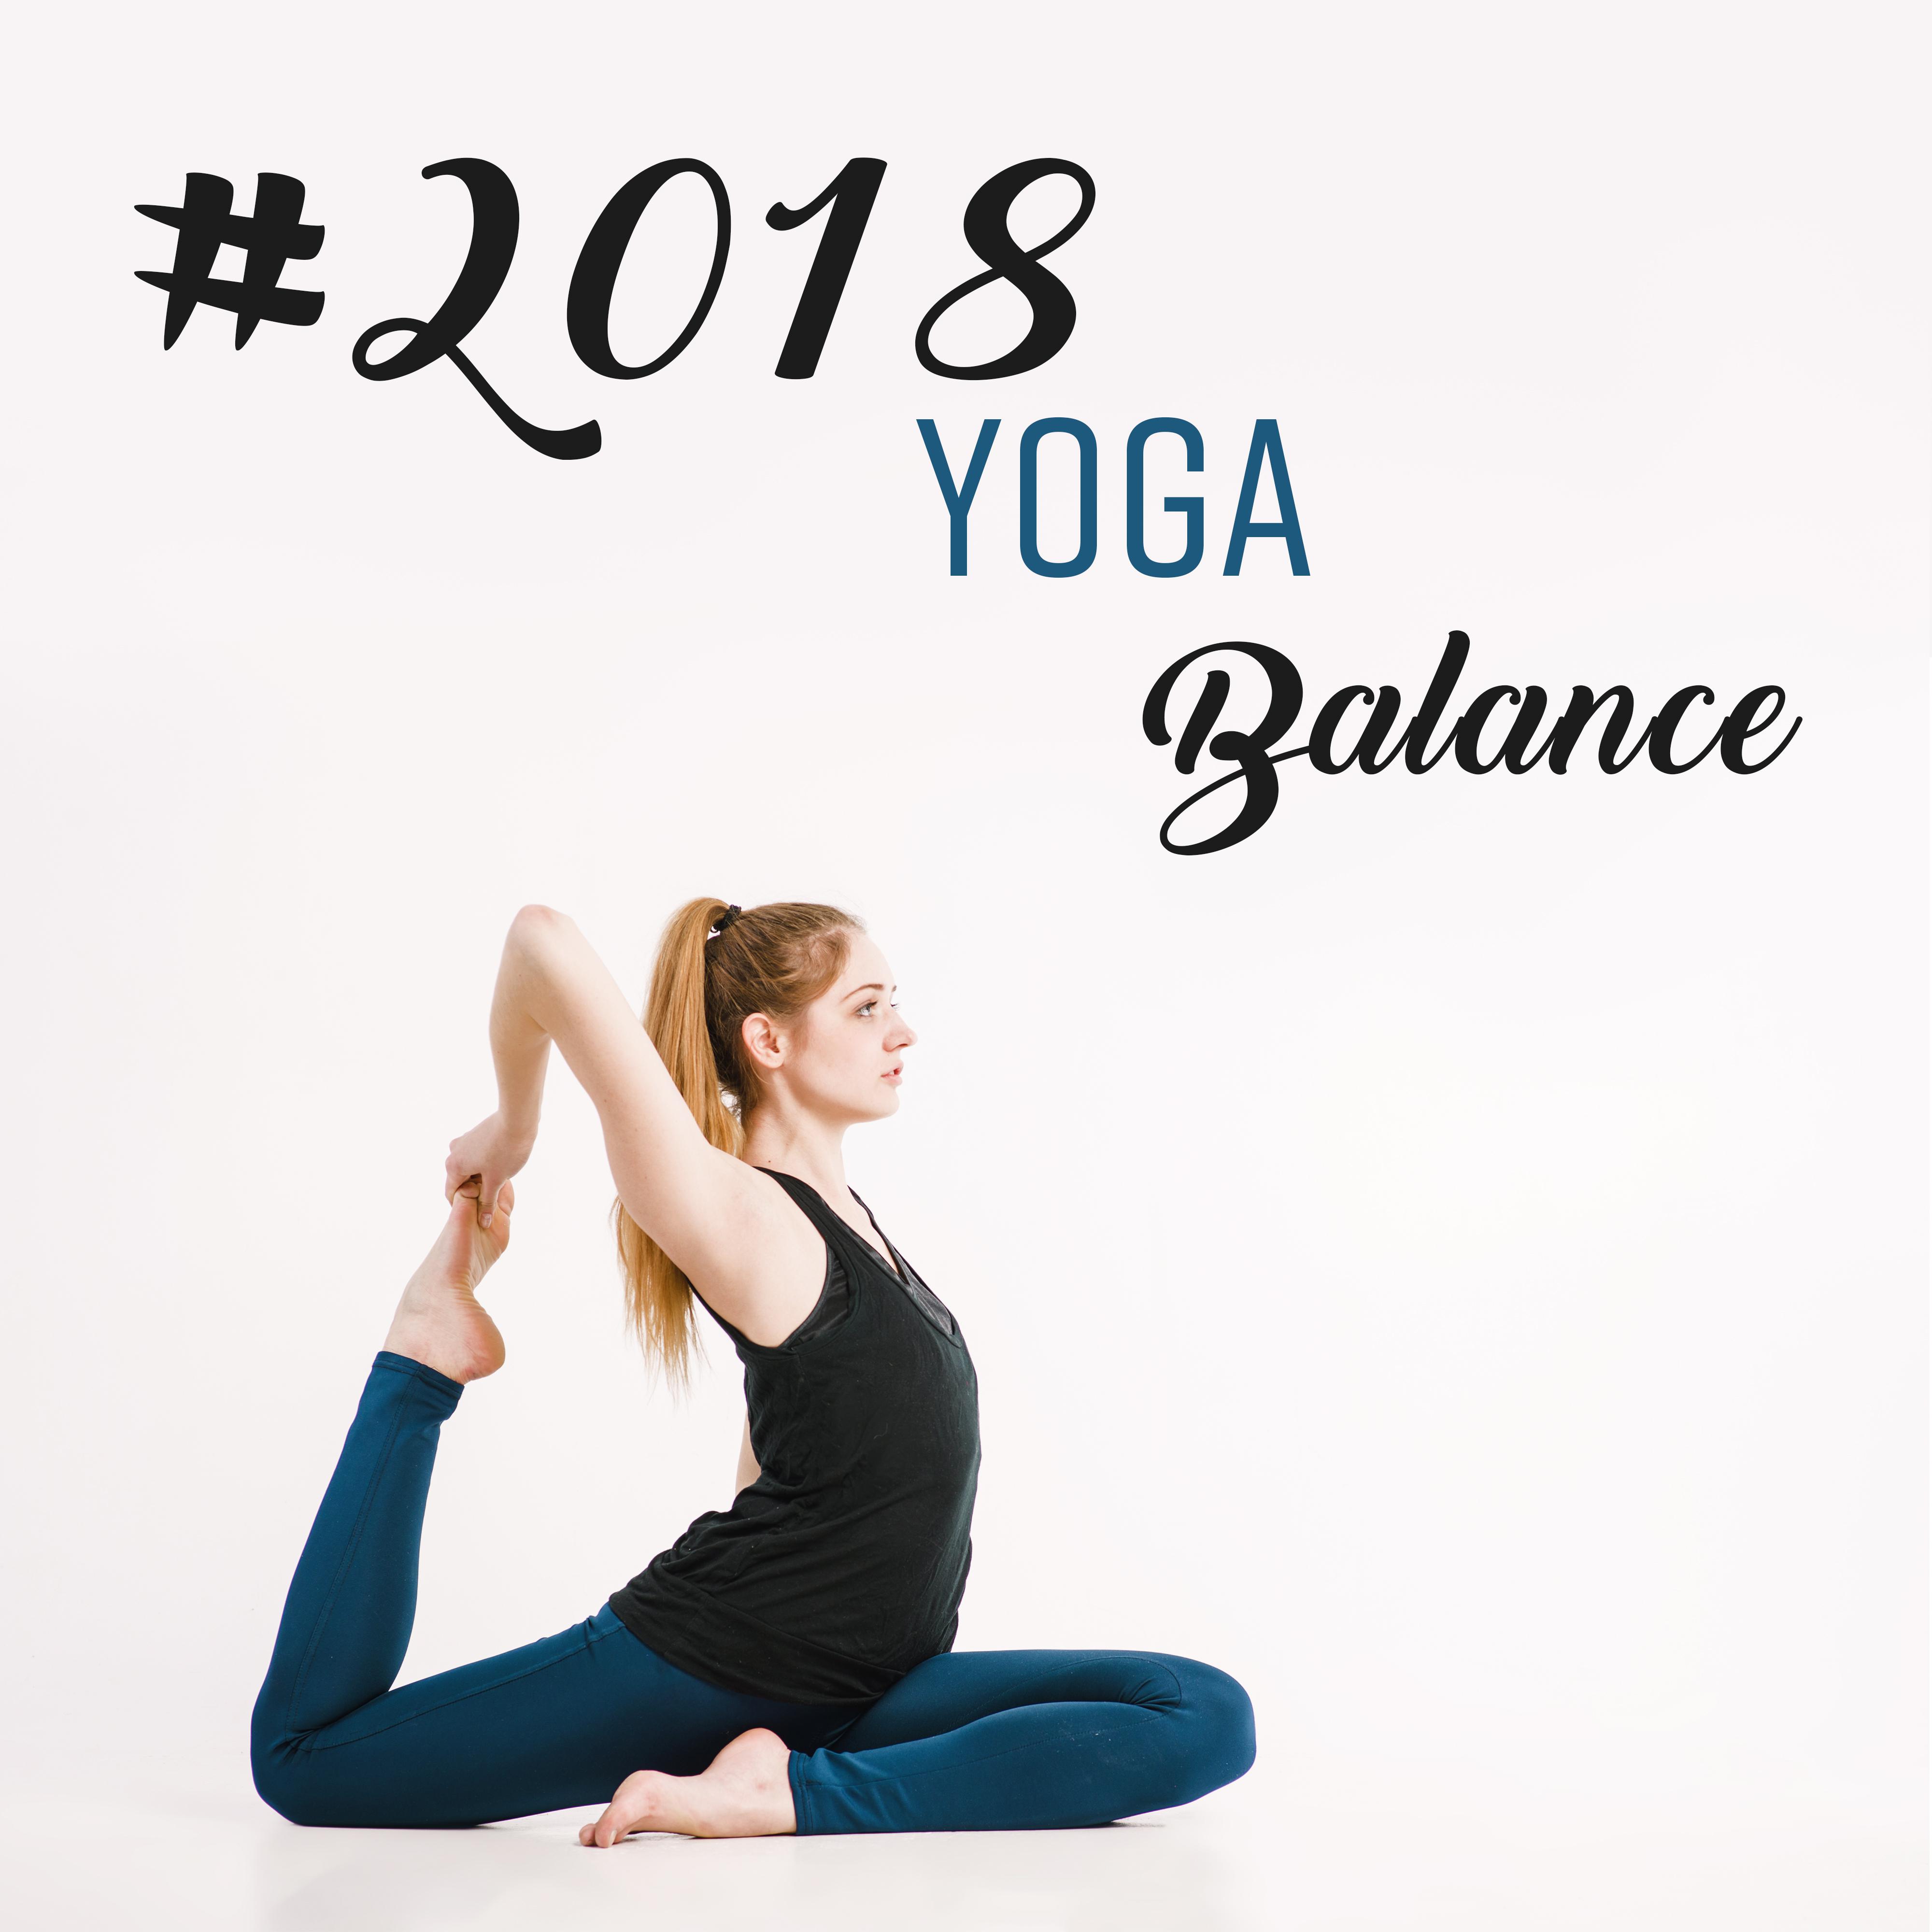 #2018 Yoga Balance